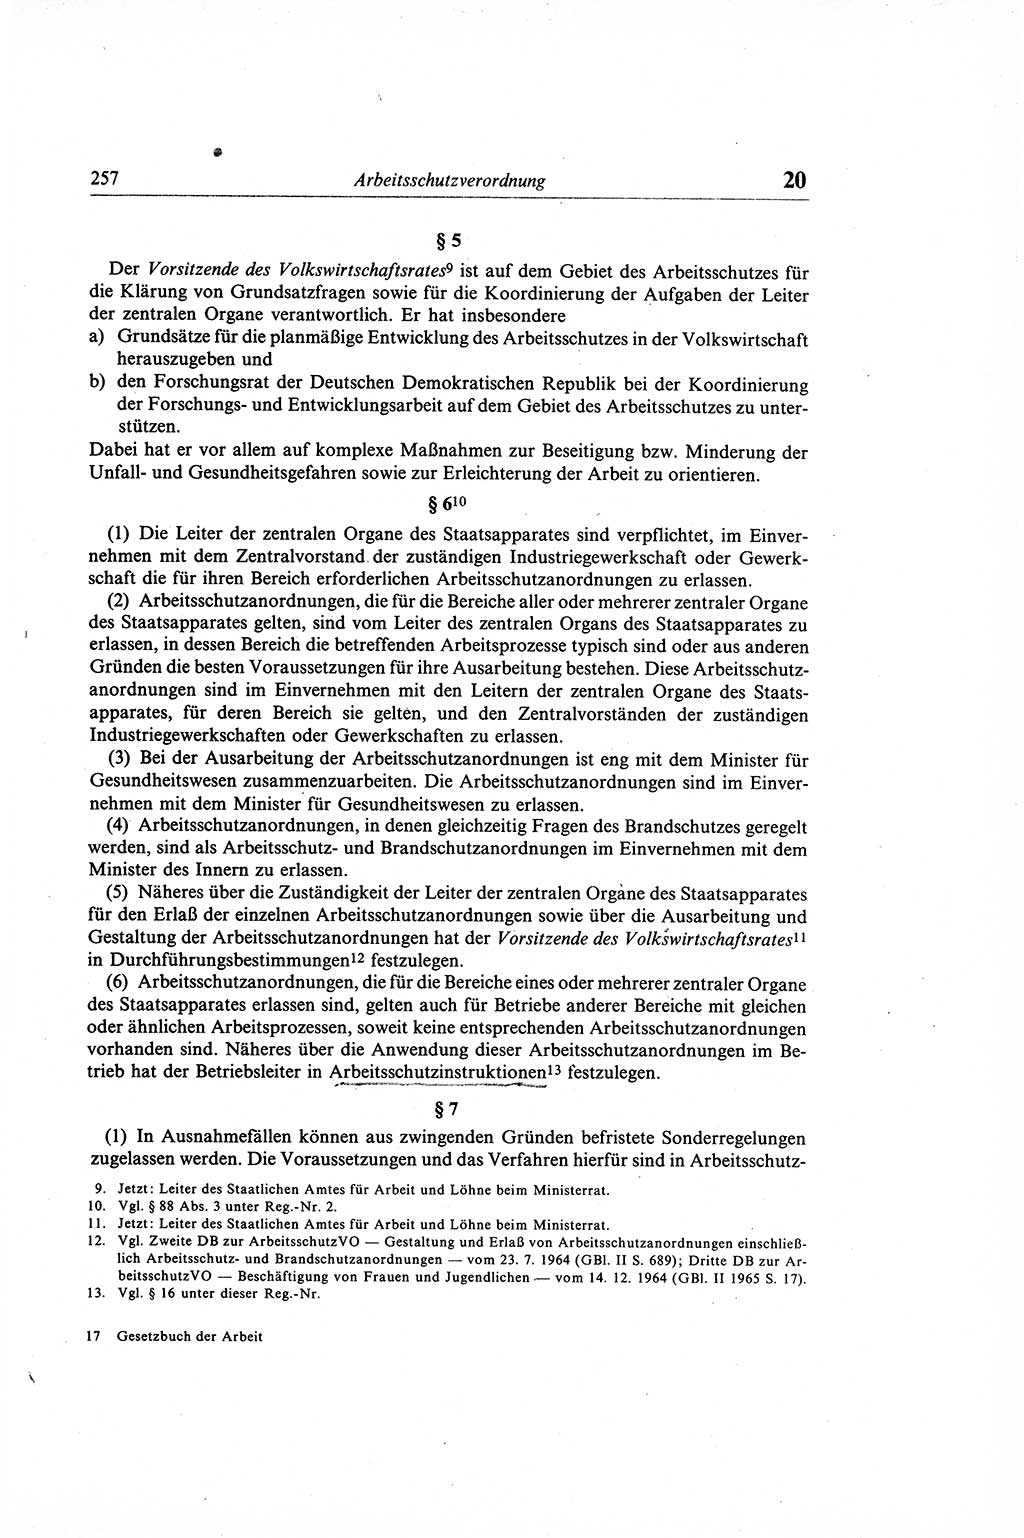 Gesetzbuch der Arbeit (GBA) und andere ausgewählte rechtliche Bestimmungen [Deutsche Demokratische Republik (DDR)] 1968, Seite 257 (GBA DDR 1968, S. 257)